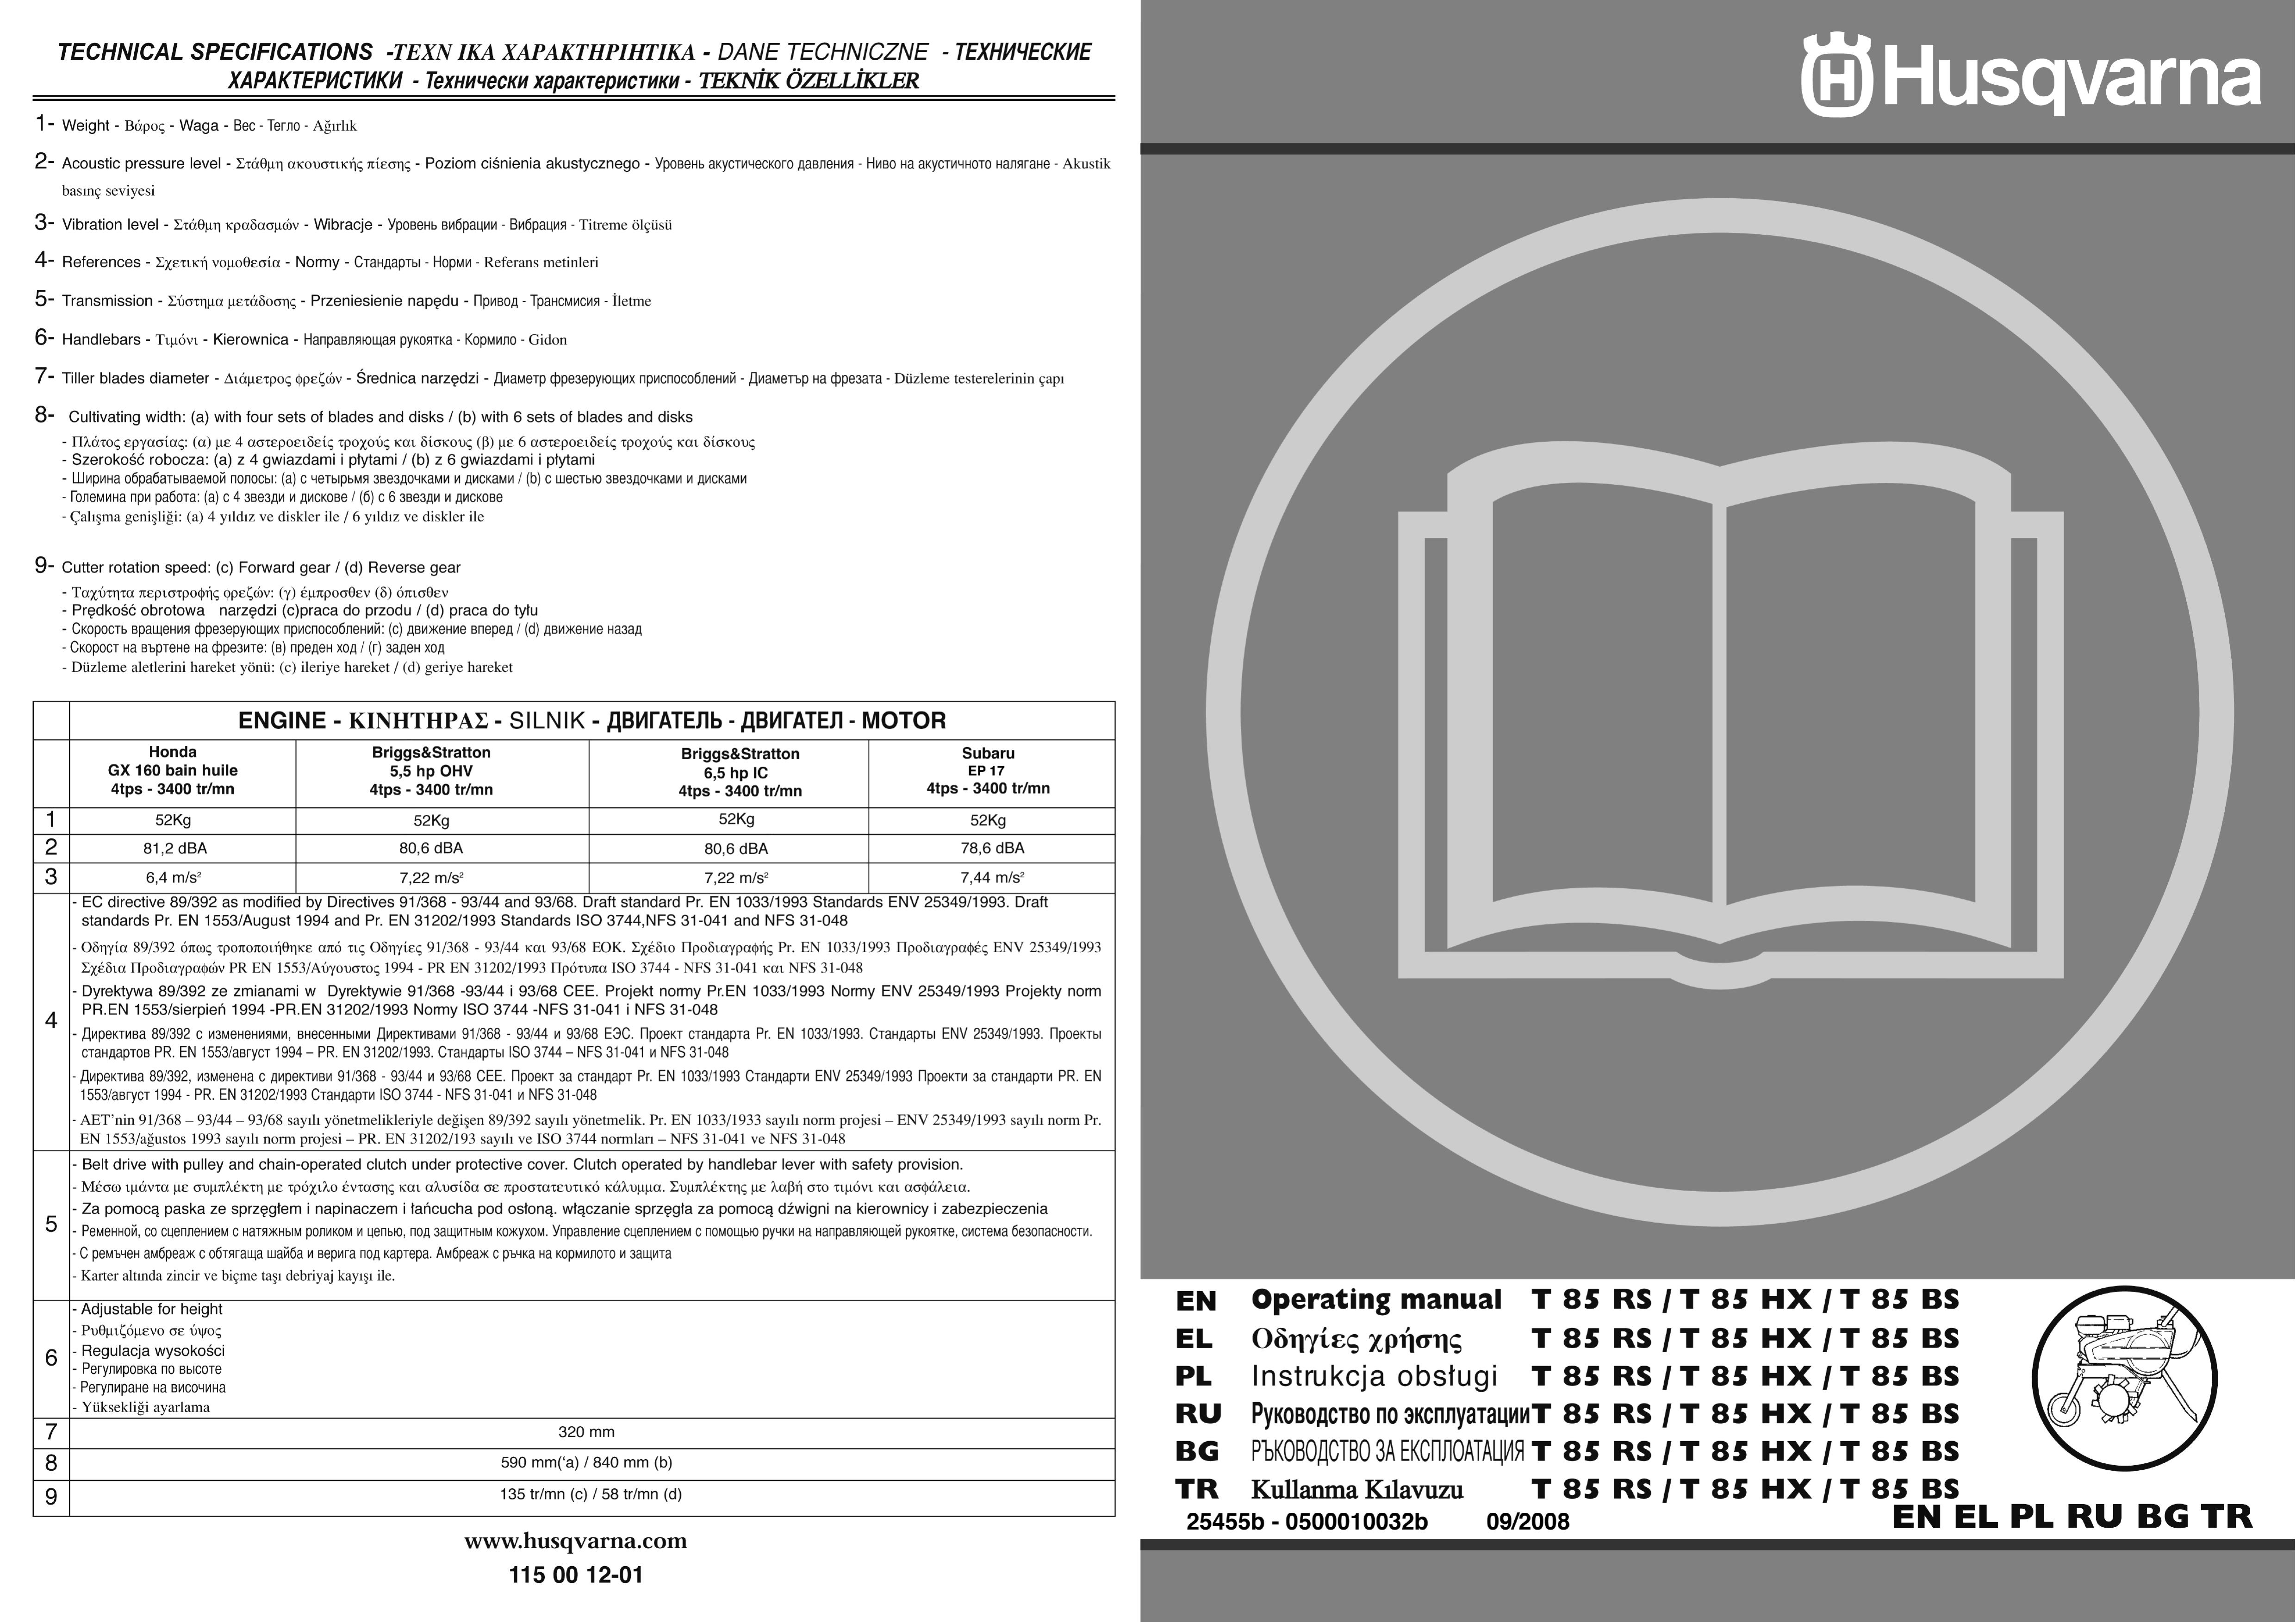 Husqvarna T85HX Tiller User Manual